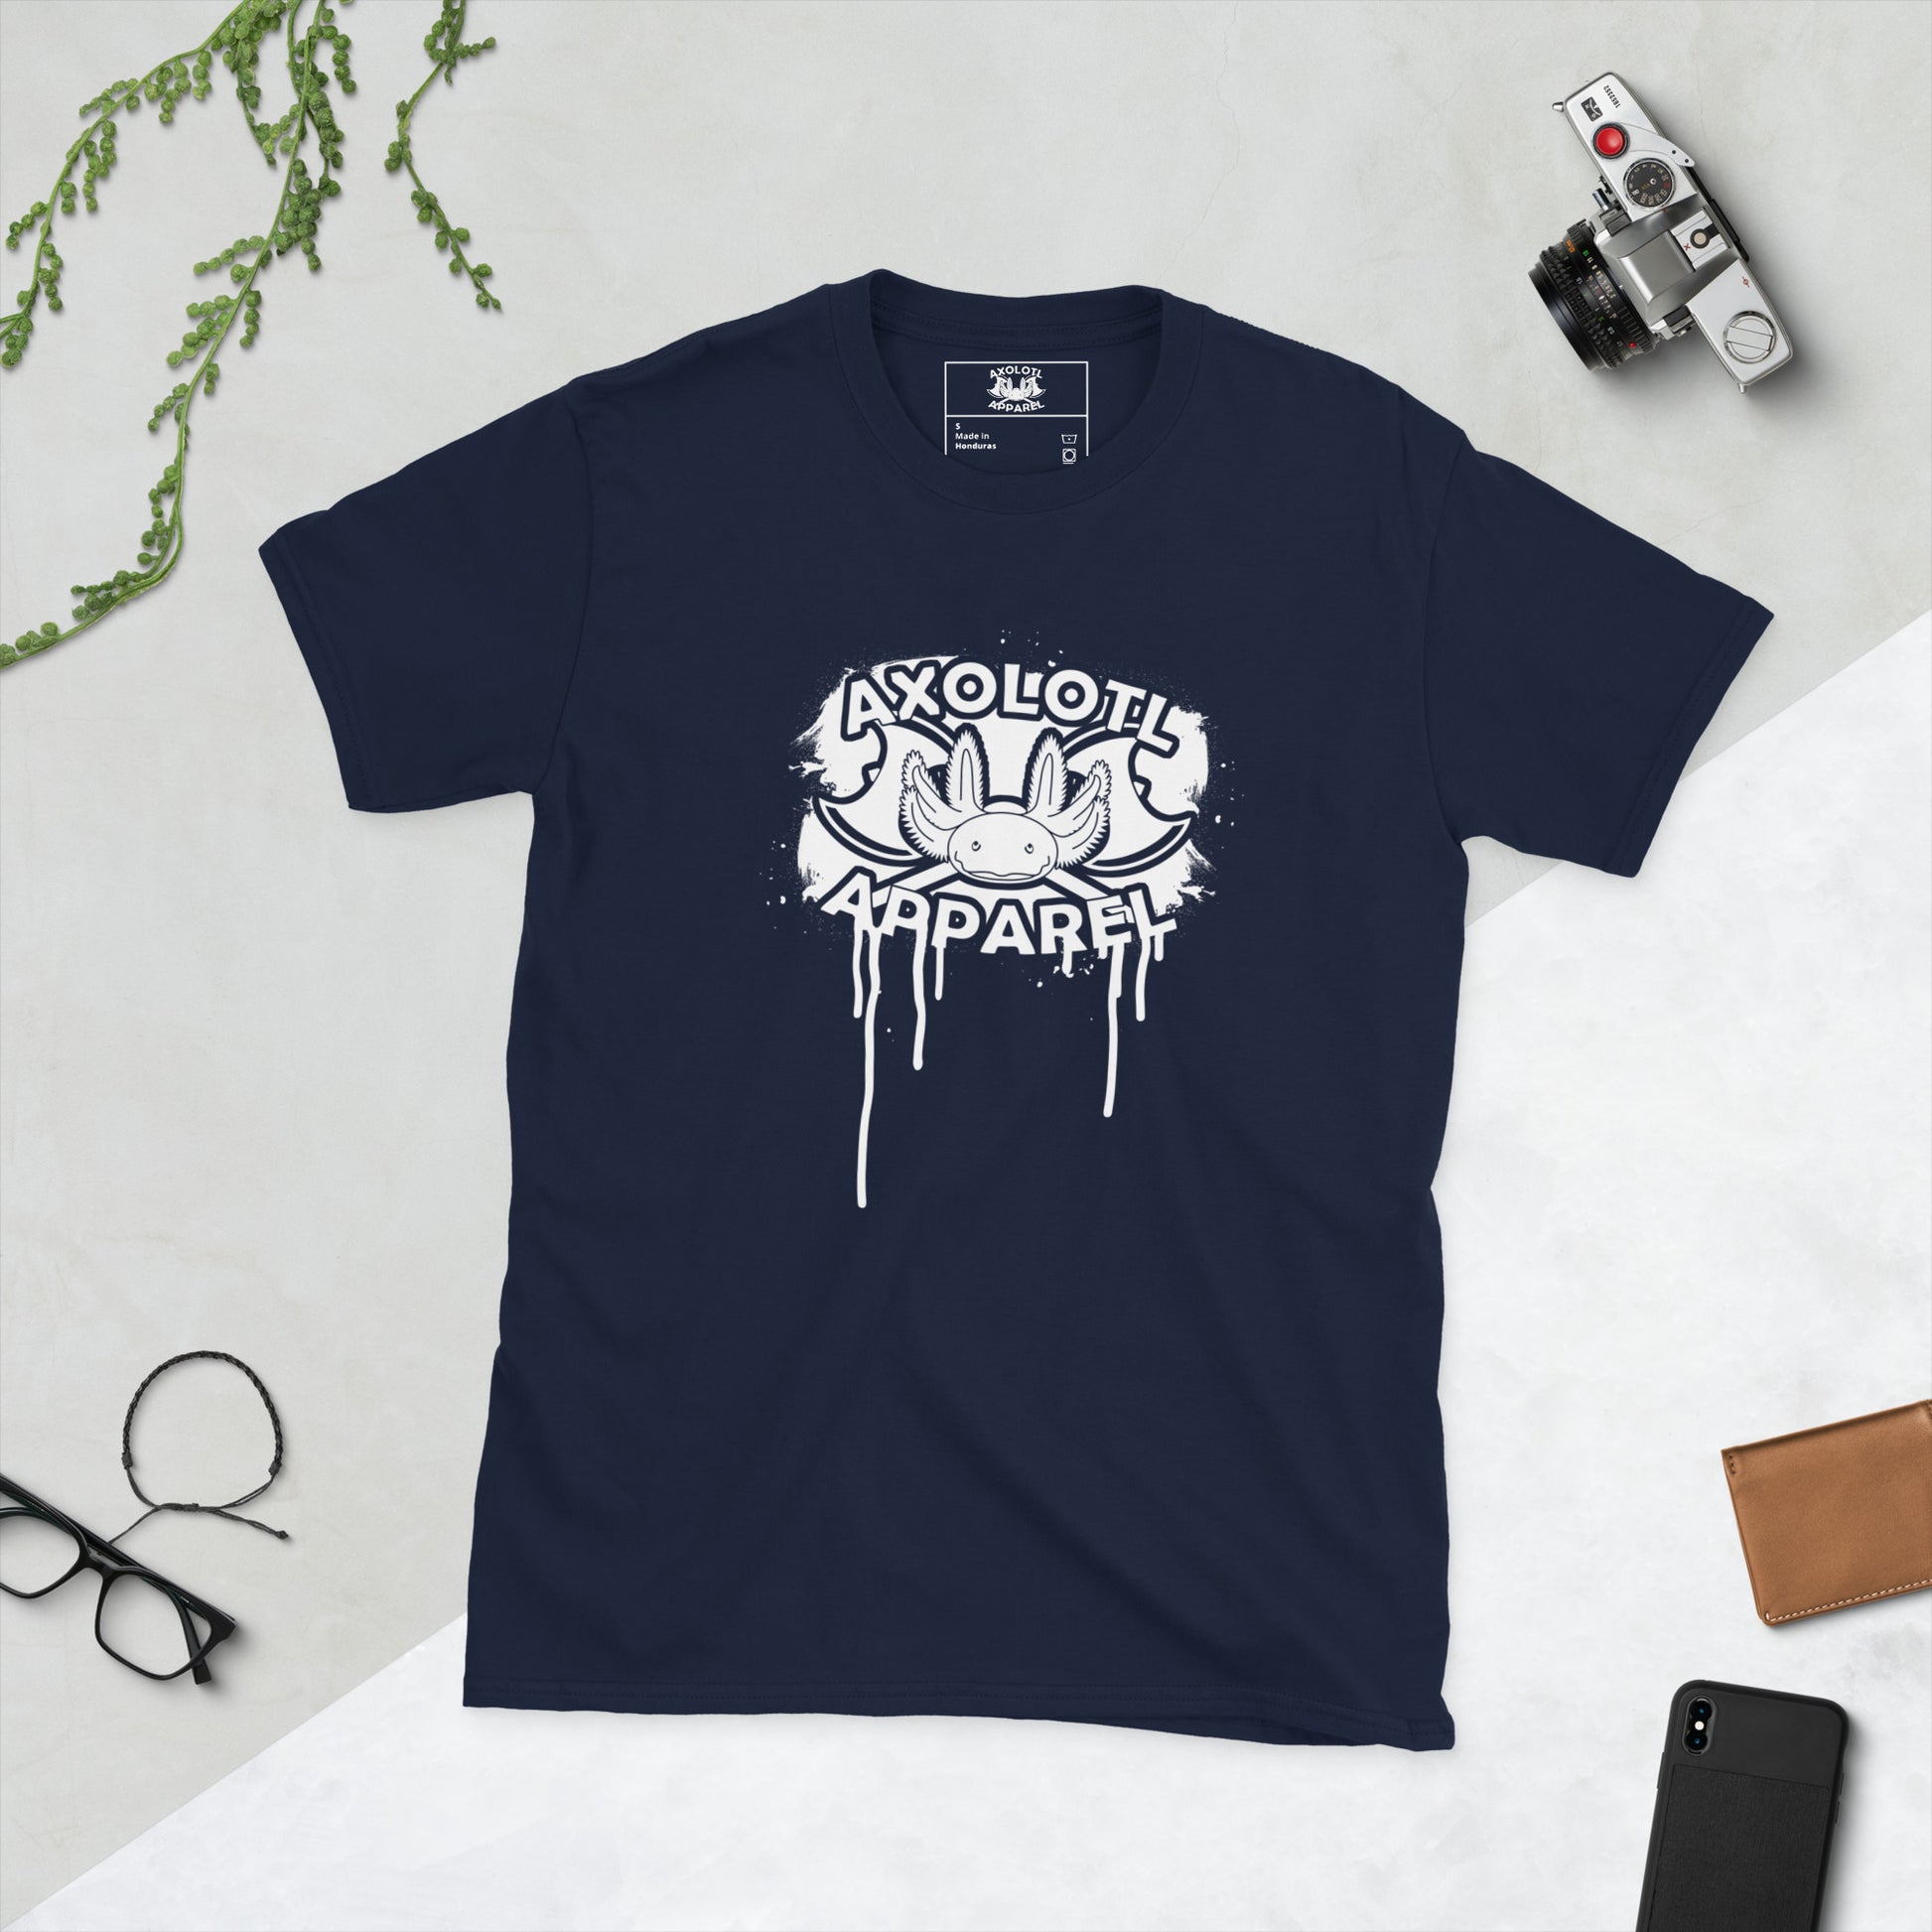 Axolotl-apparel-spatter-logo_Short-sleeve_Unisex_T-shirt_Navy_Flat